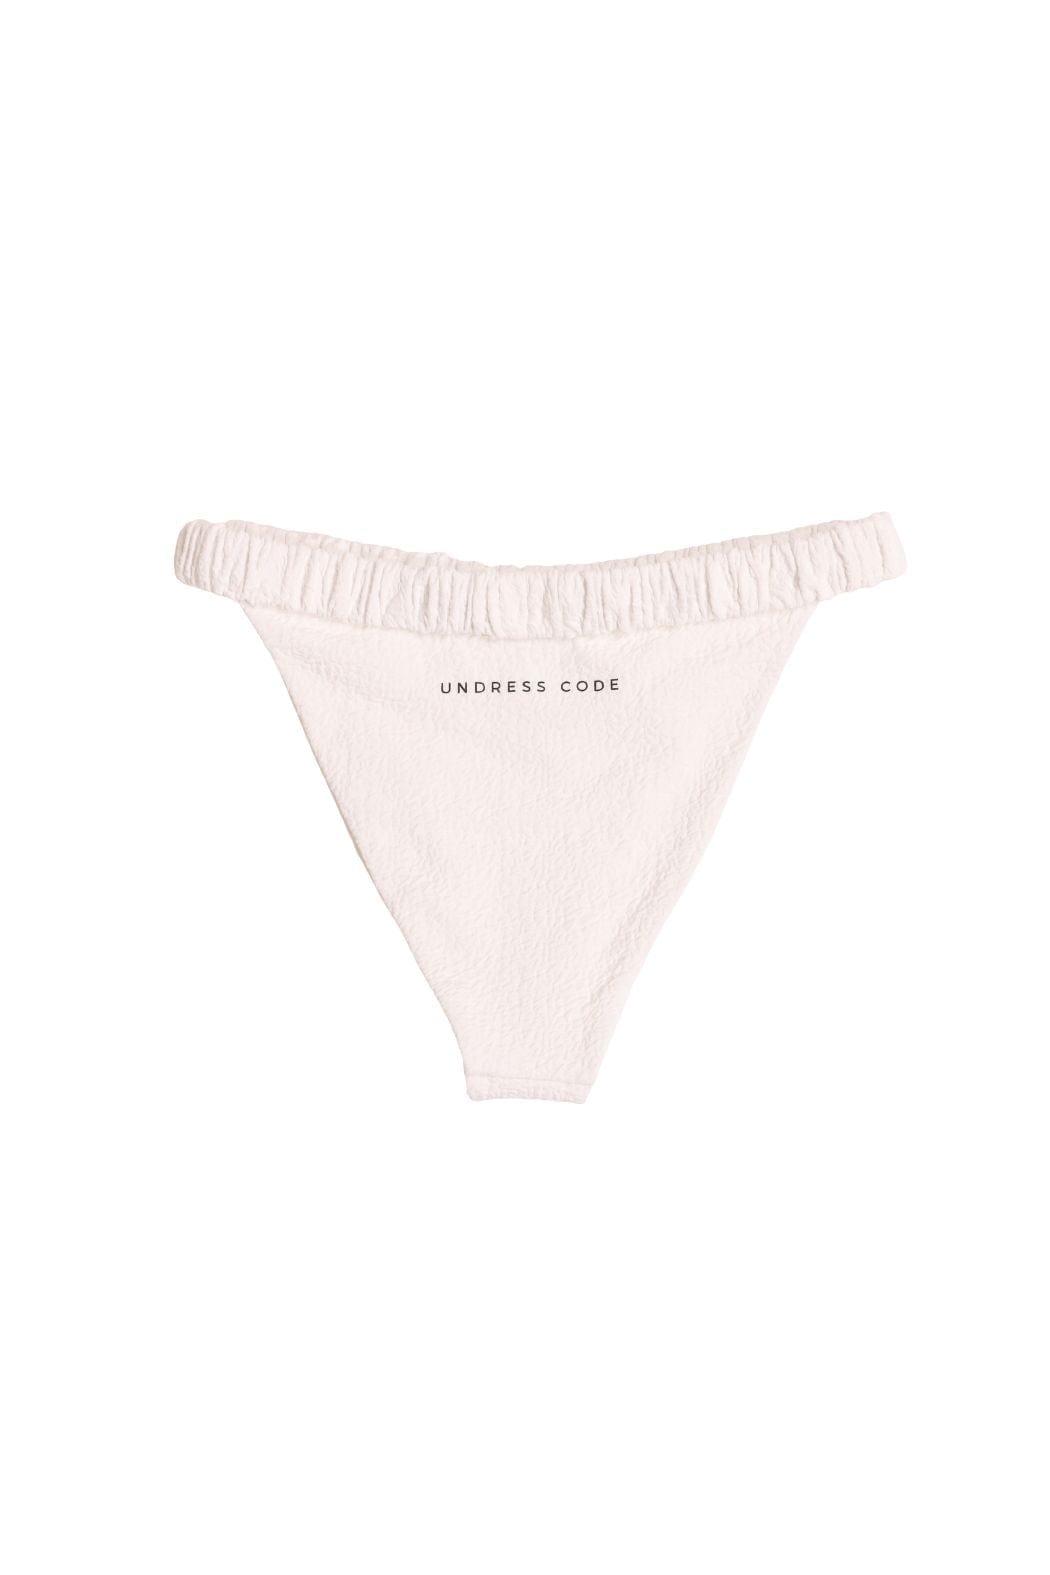 Undress Code Bikini Bottom Girlish Charm Bikini Bottom - White